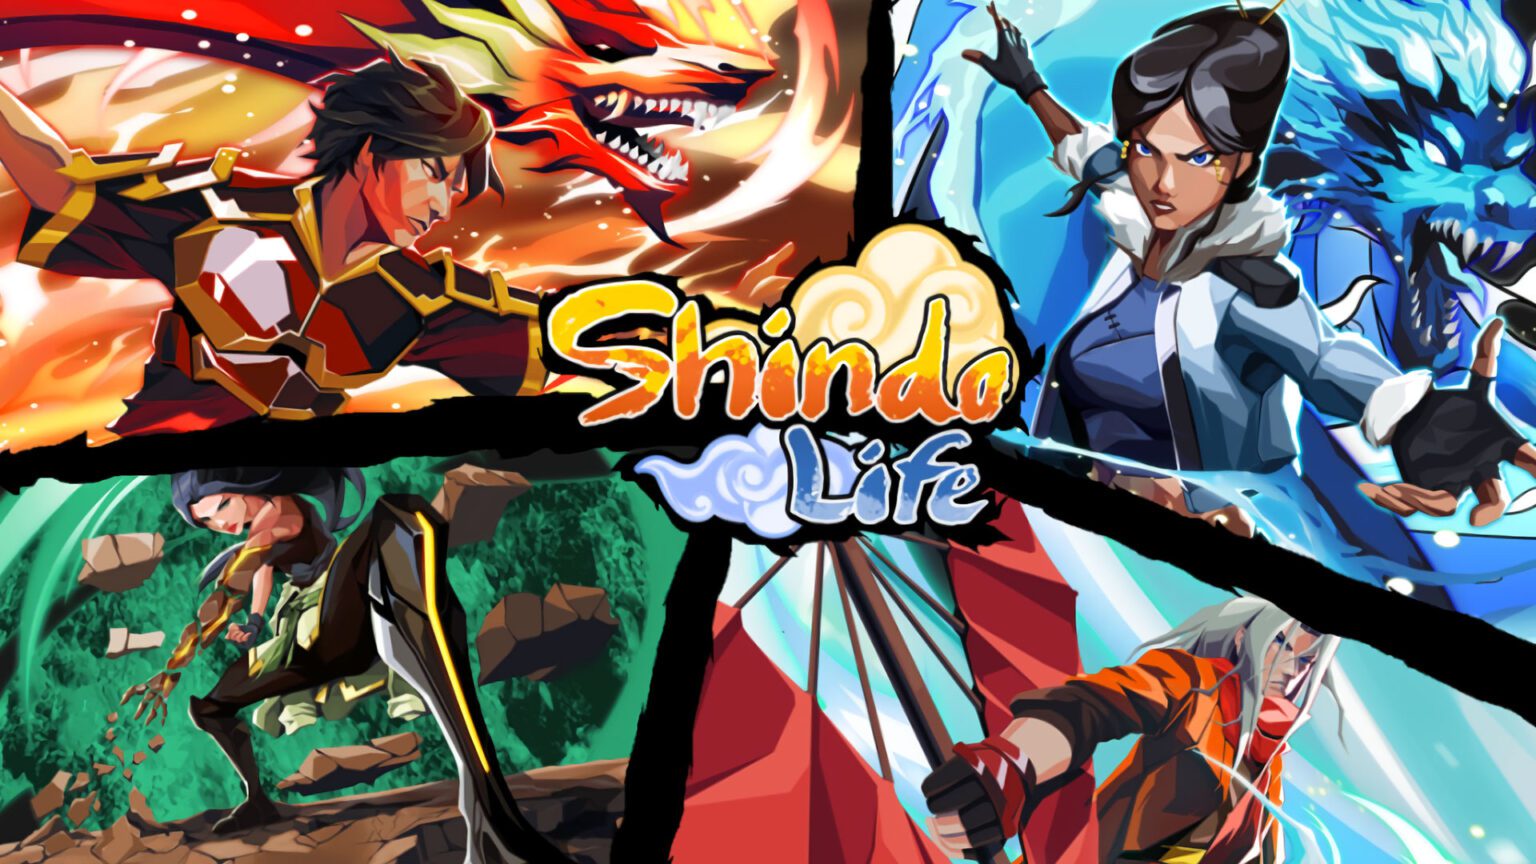 Neues Spear of Tyn-Update für Shindo Life!